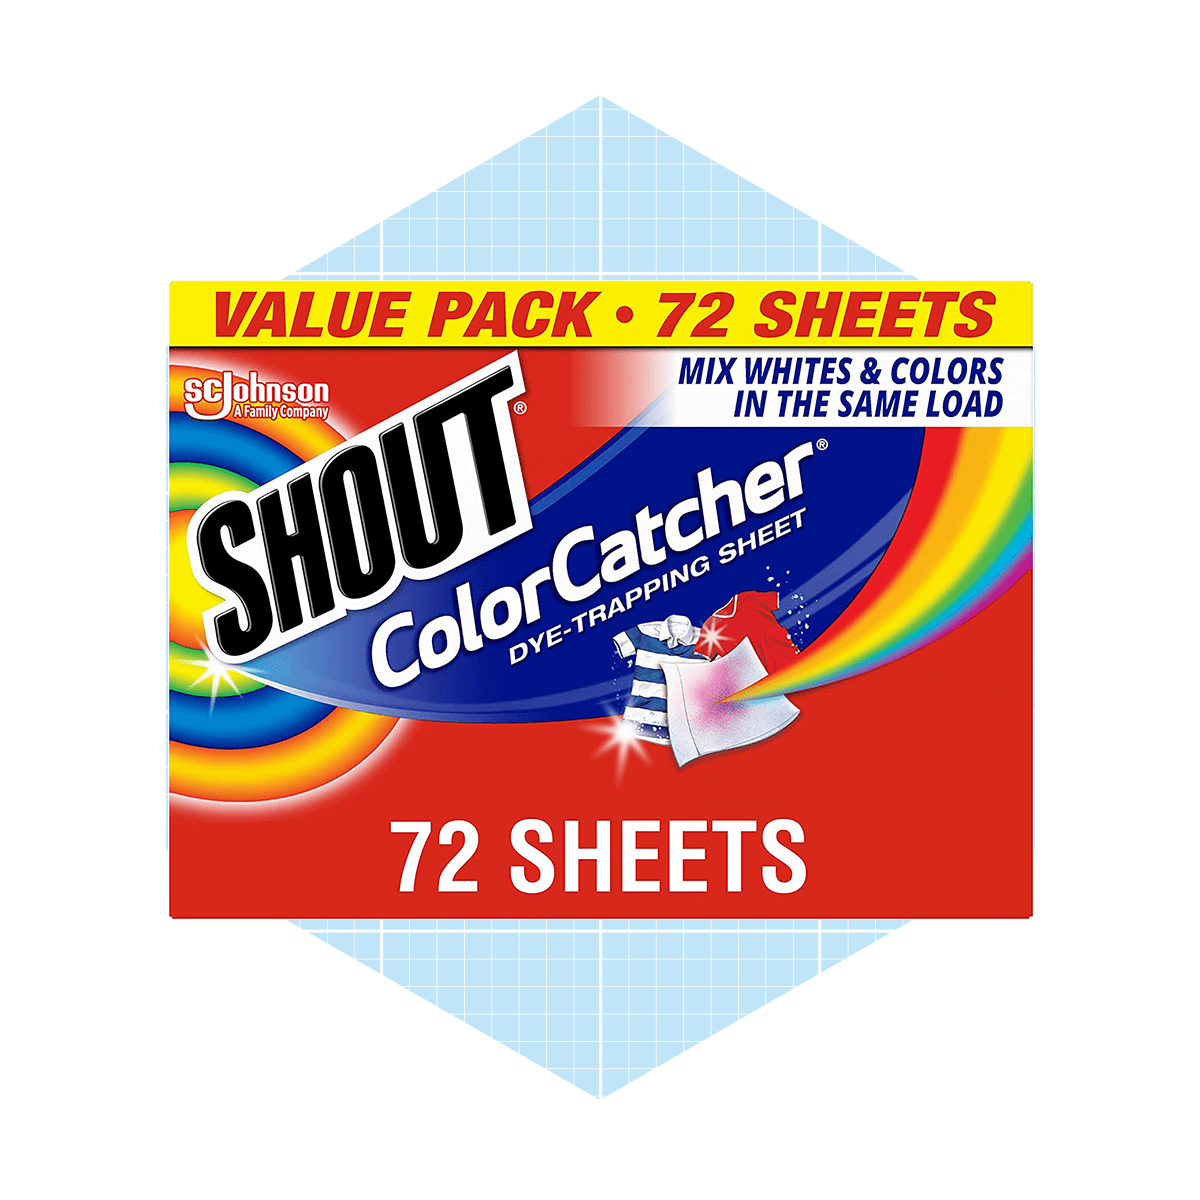 Shout Color Catcher Sheets Ecomm Via Amazon.com